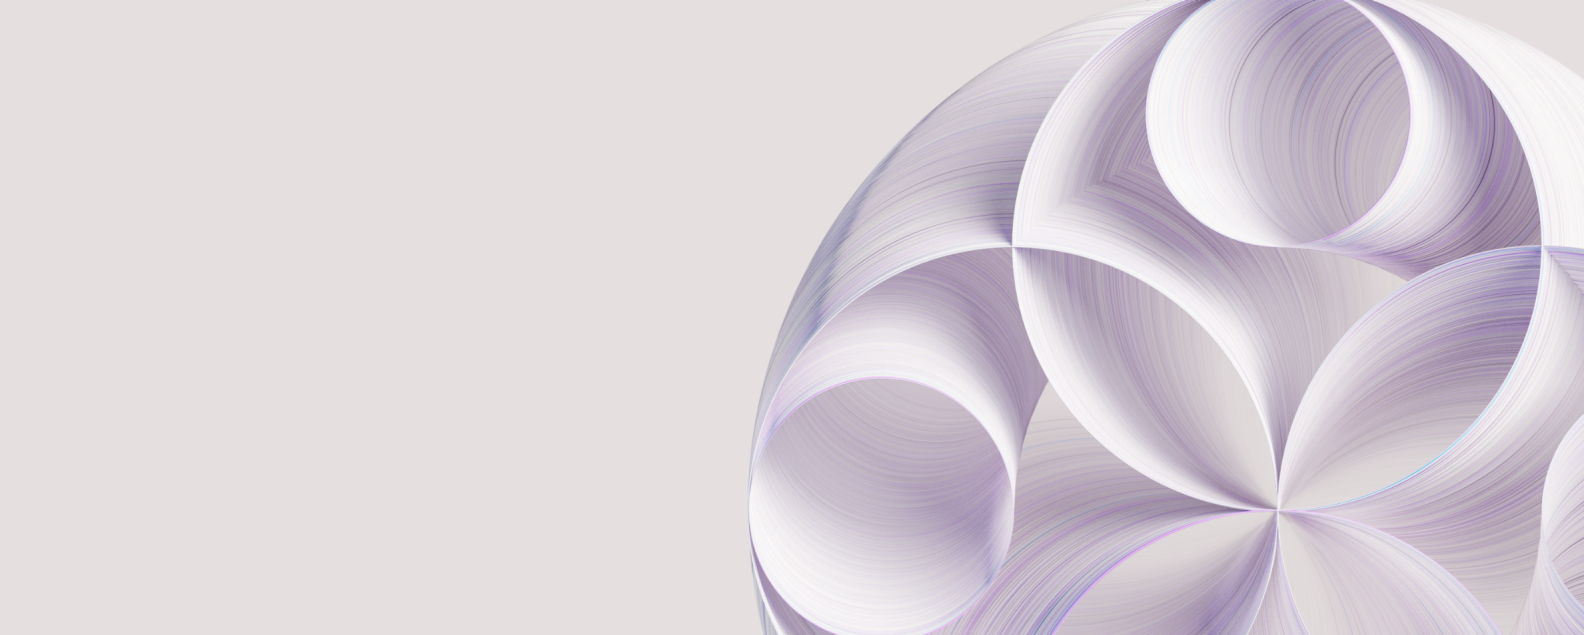 Digital rendering of the IBM watsonx purple circles